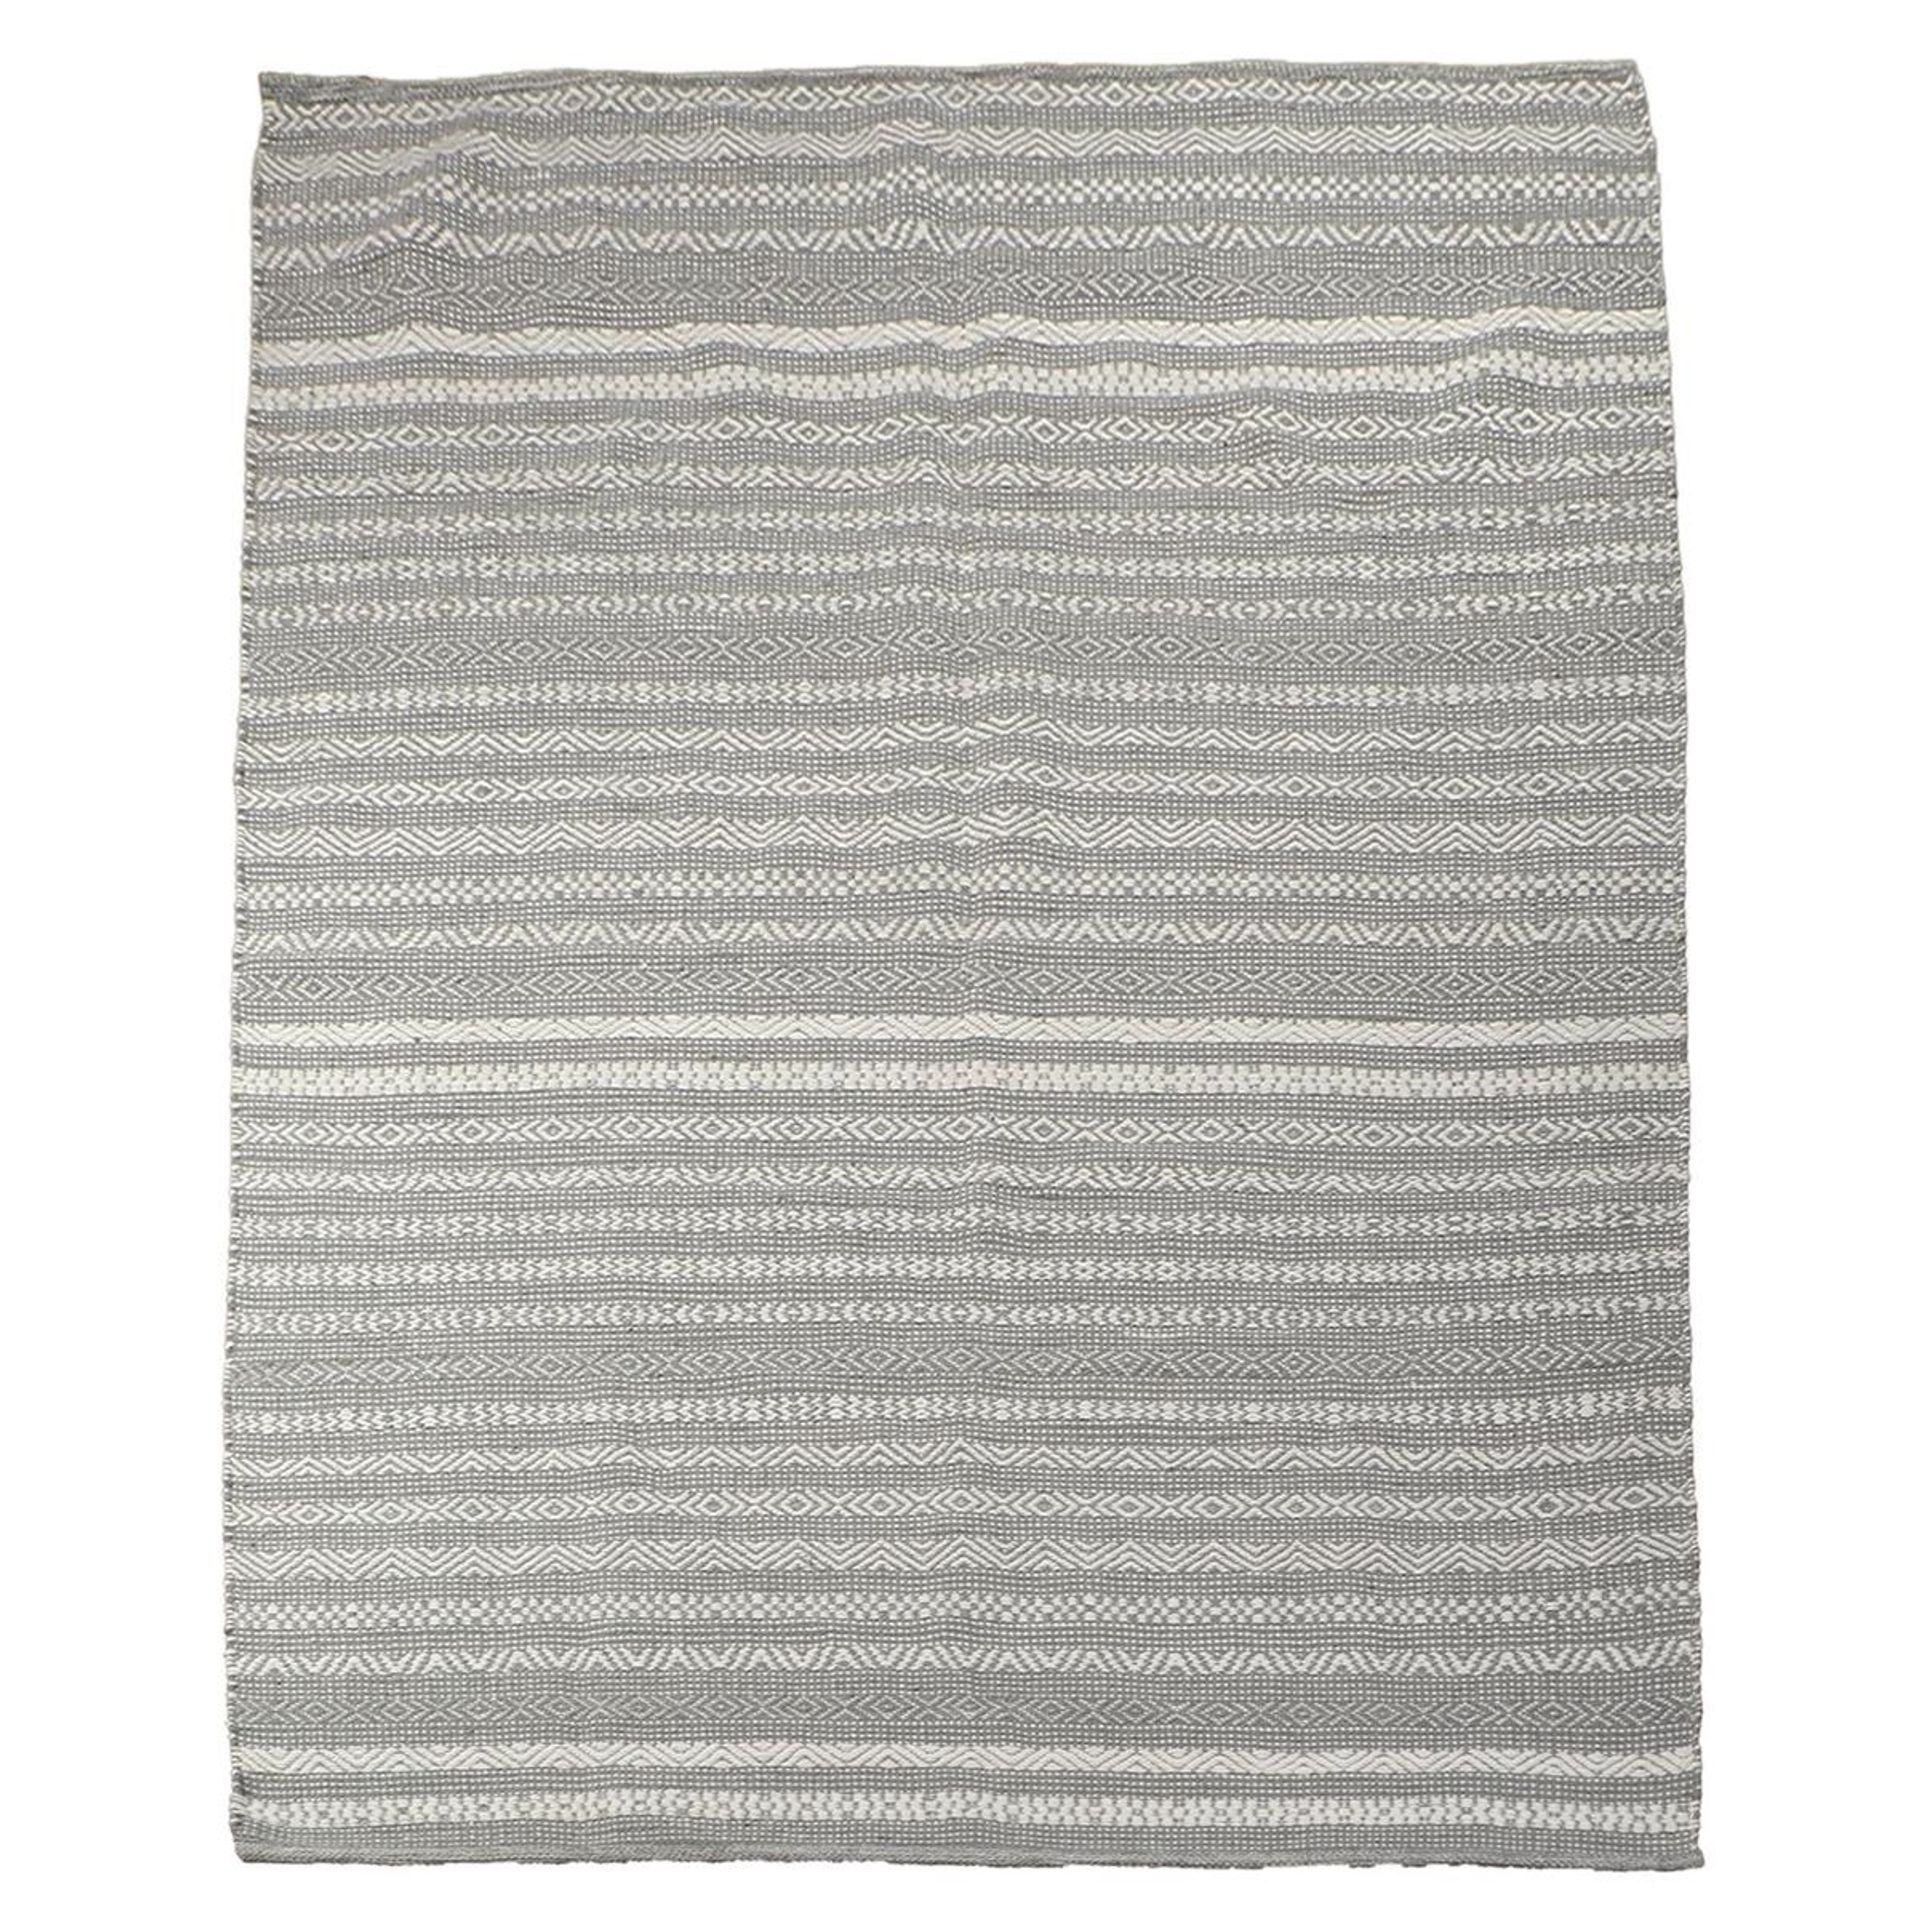 Teppich Jodhpur 710 Neutral / Grau 160 cm x 230 cm